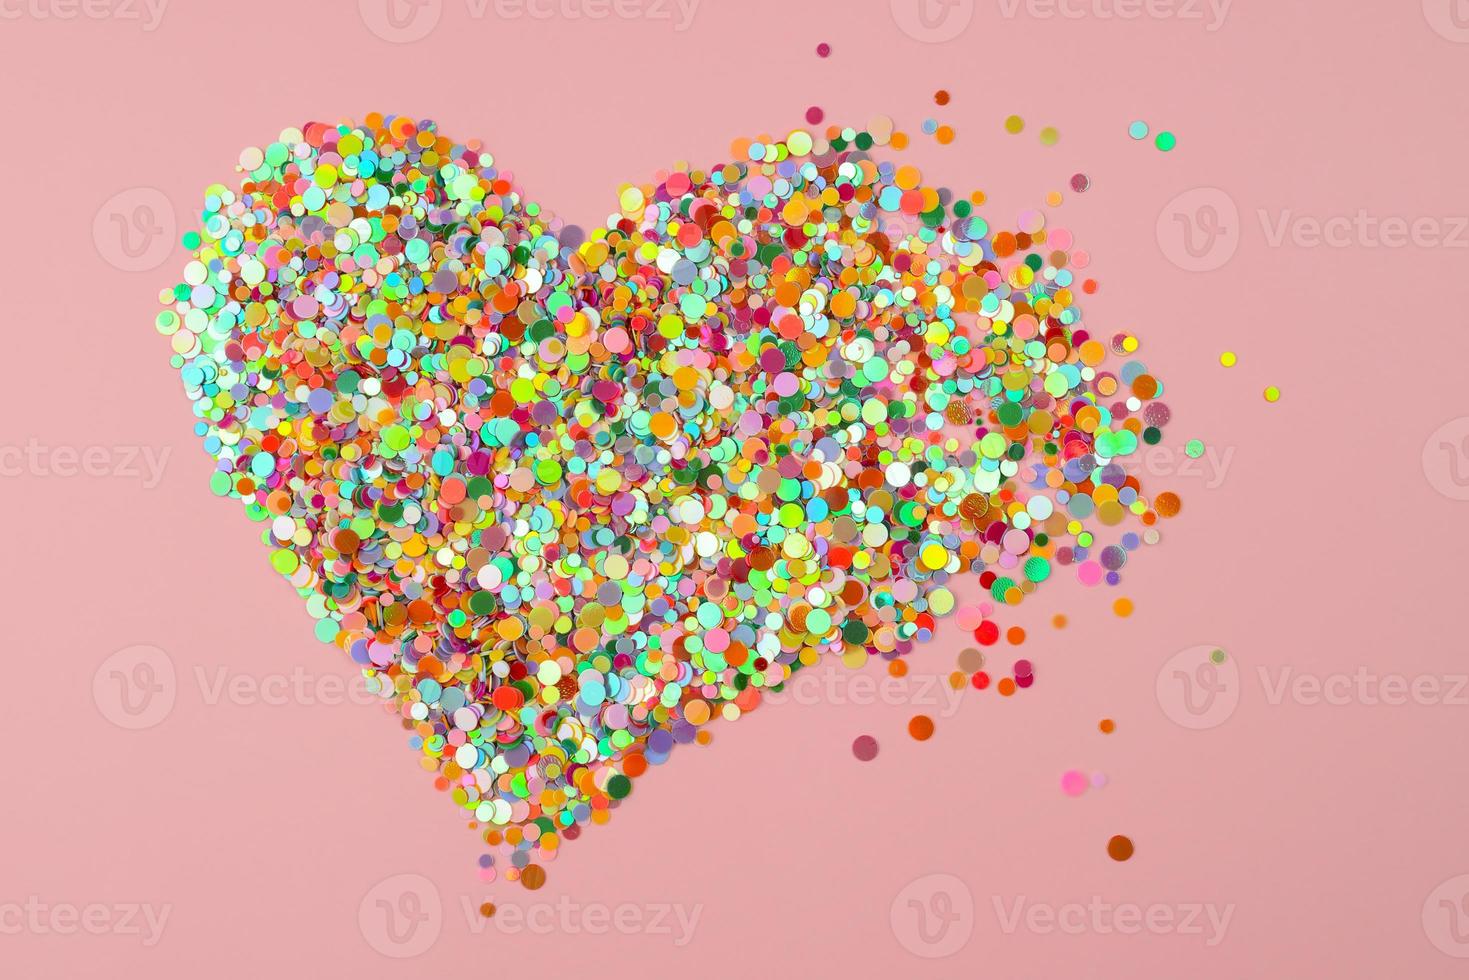 Heart Shape made of paper confetti. Breaking heart scatter. Broken heart, hurt feeling, end of love photo